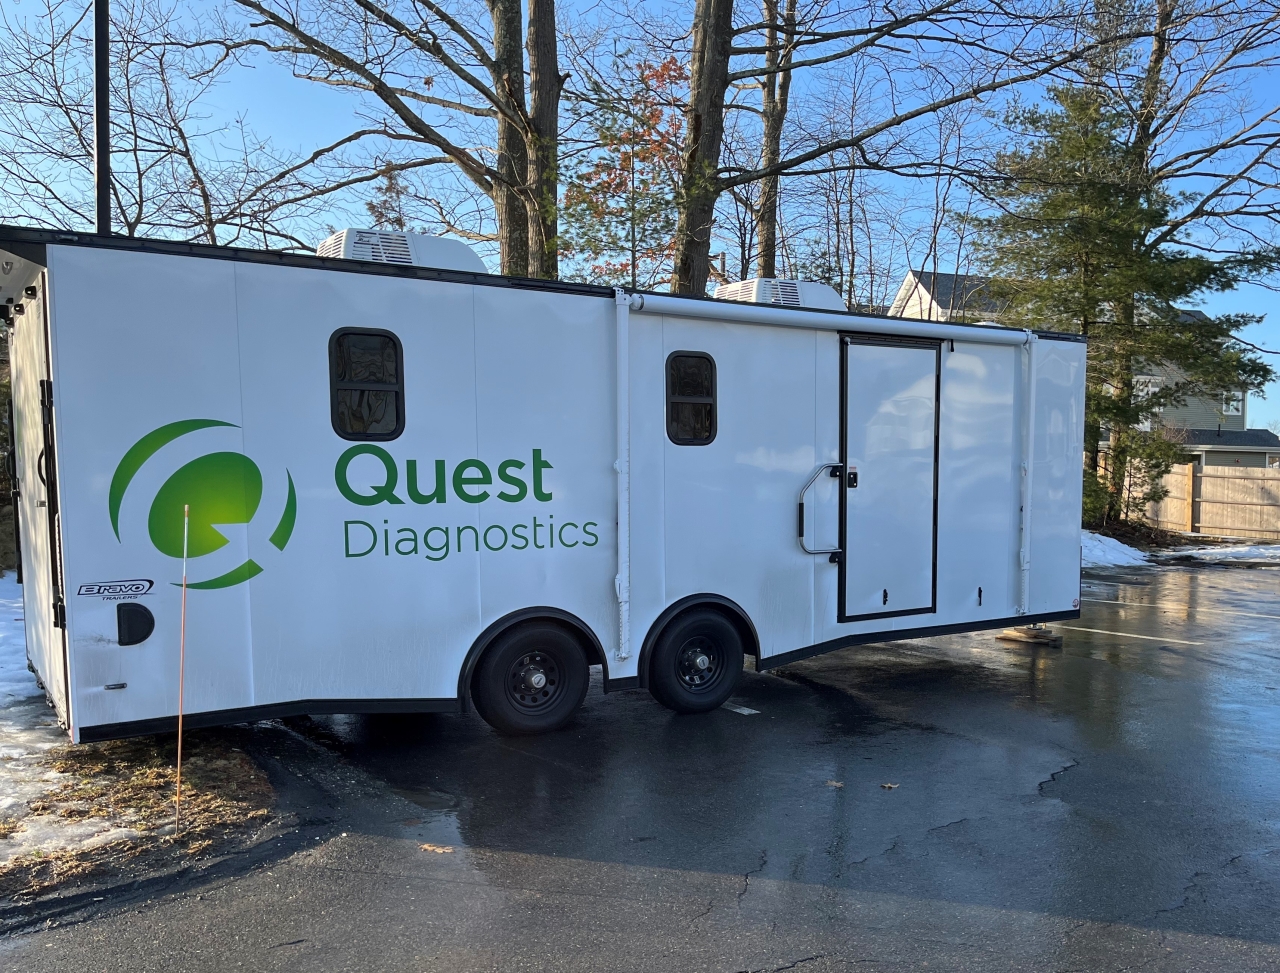 Quest diagnostics mobile unit